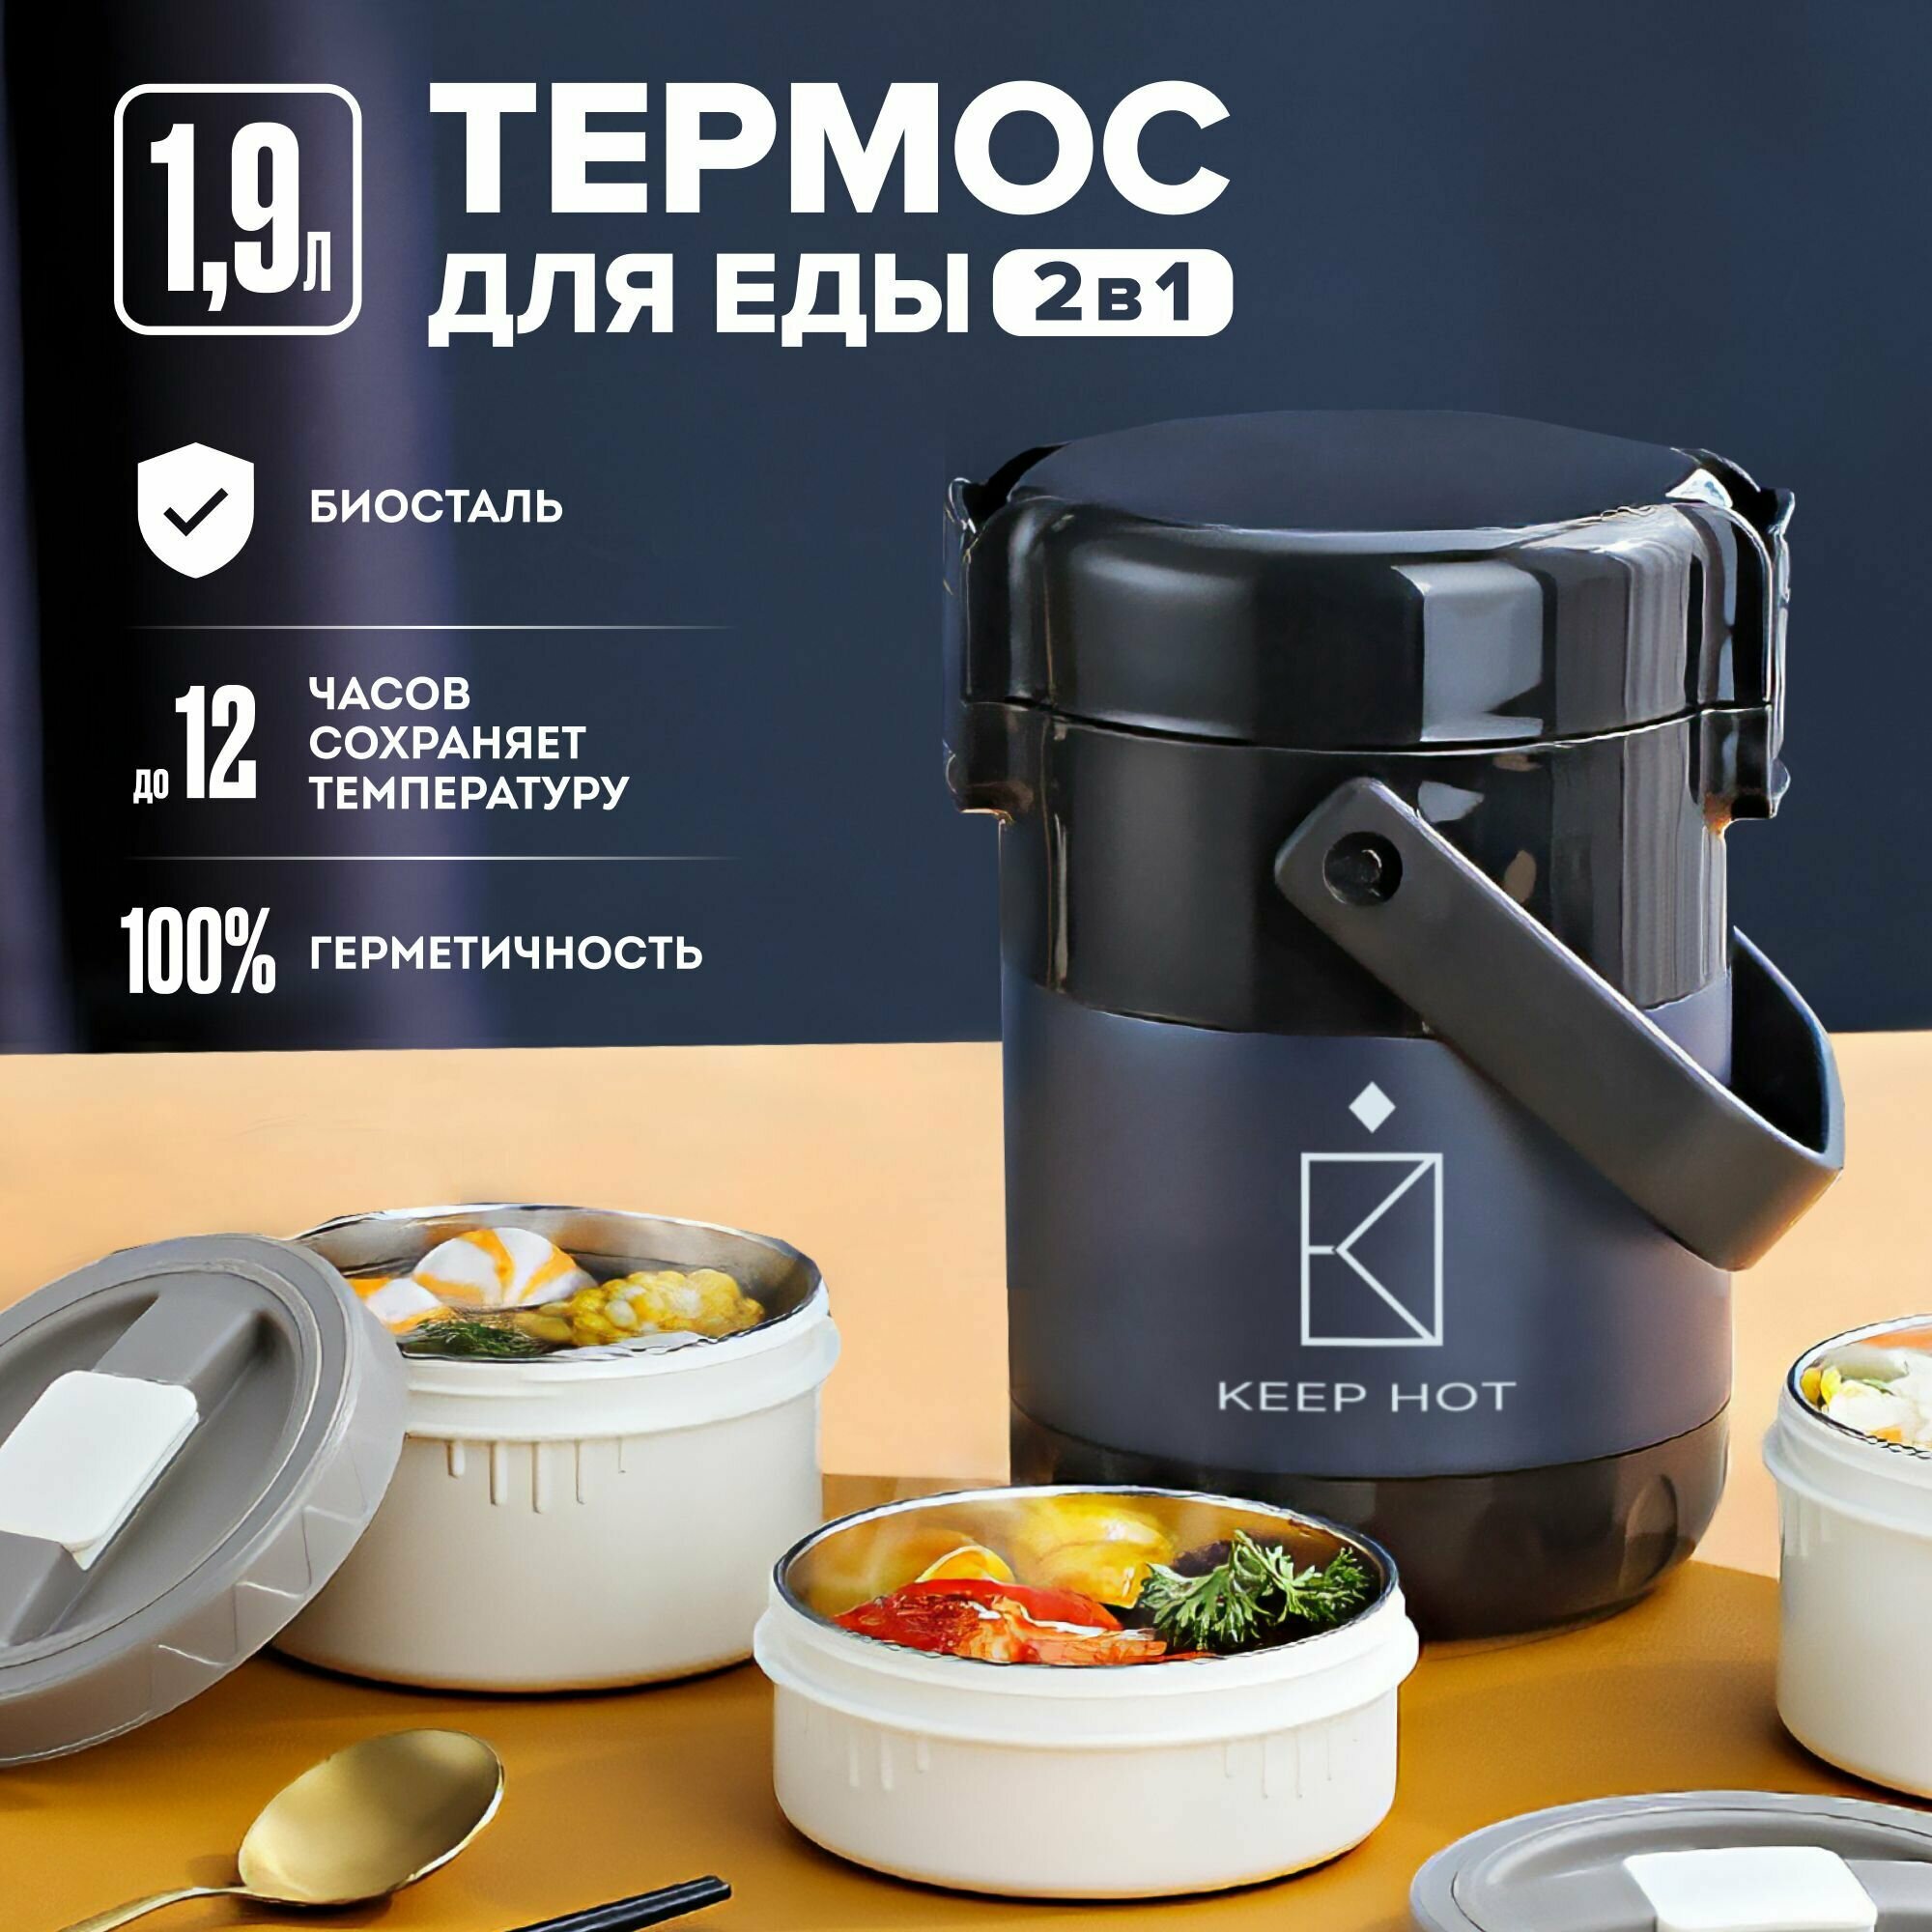 Термос 19литра для чая и еды с широким горлом